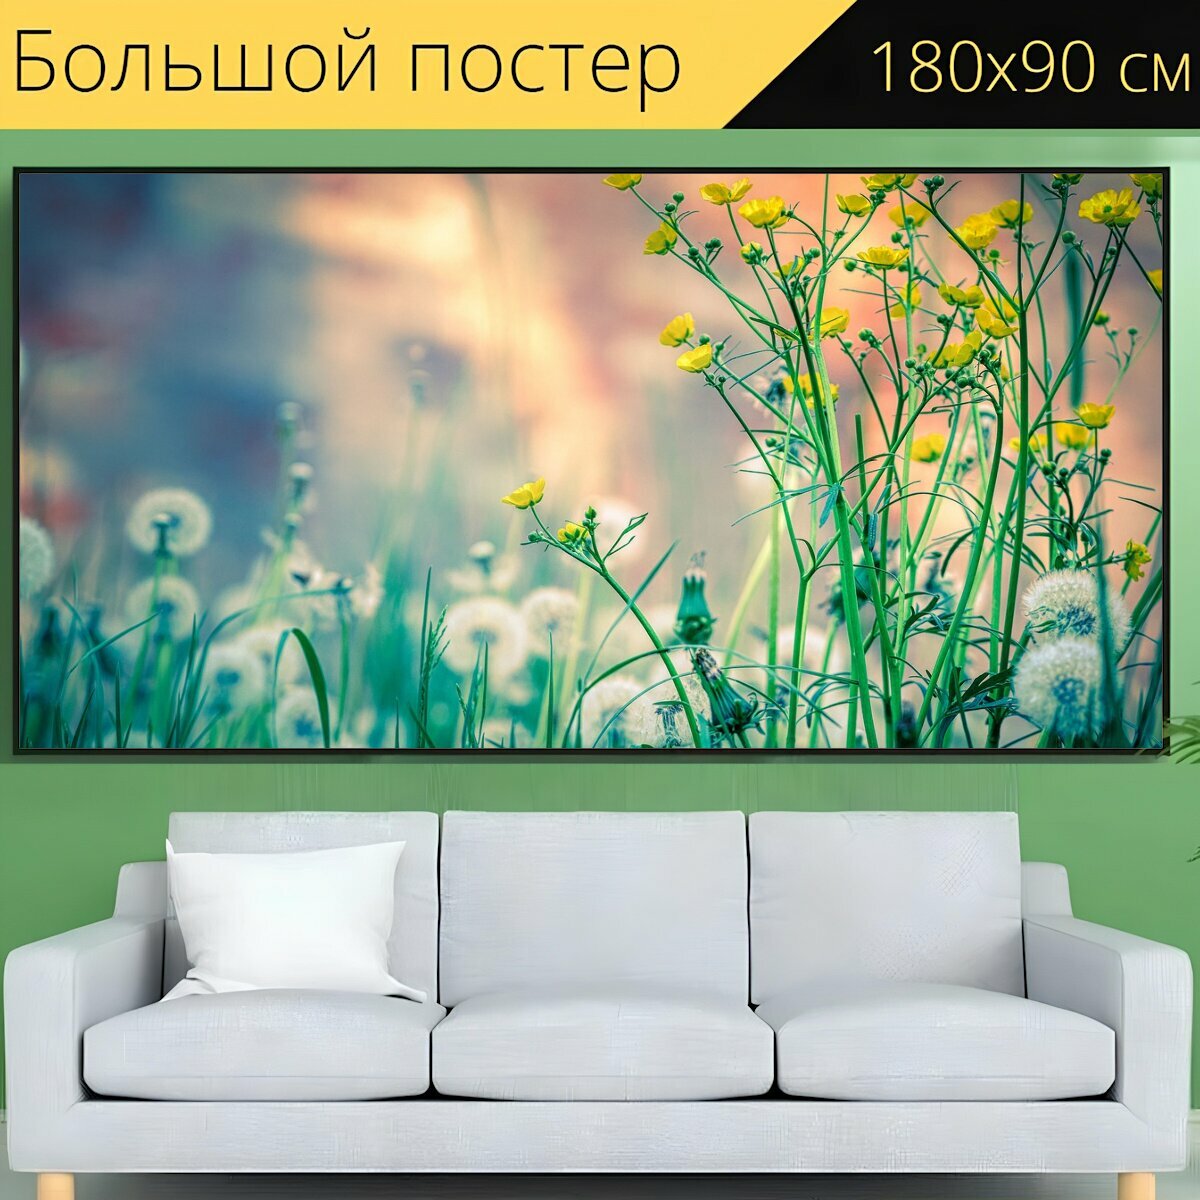 Большой постер "Весна, цветочный луг, полевой цветок" 180 x 90 см. для интерьера